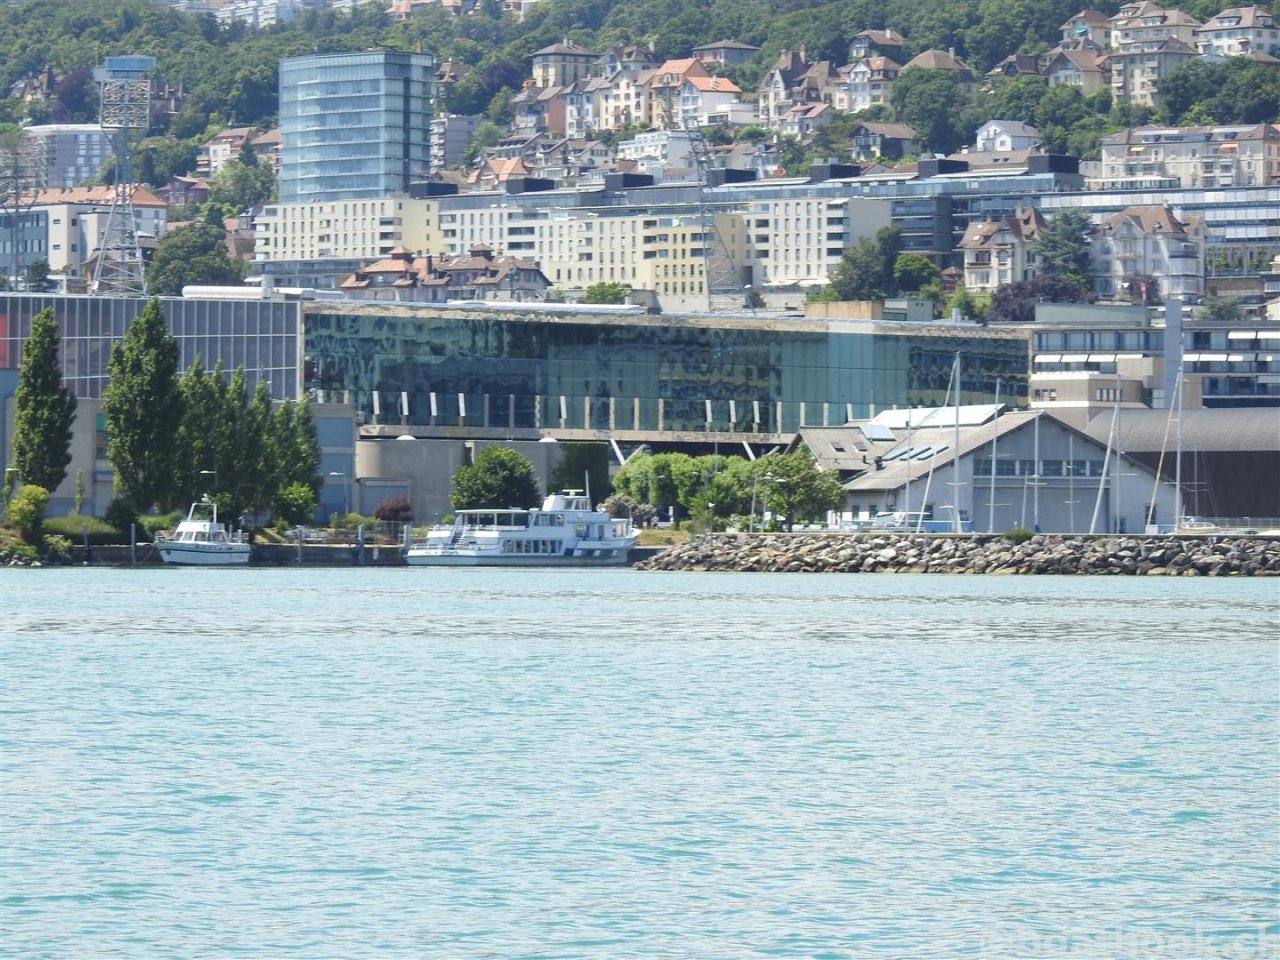 Der Hafen Neuchâtel Nid-du-Crô